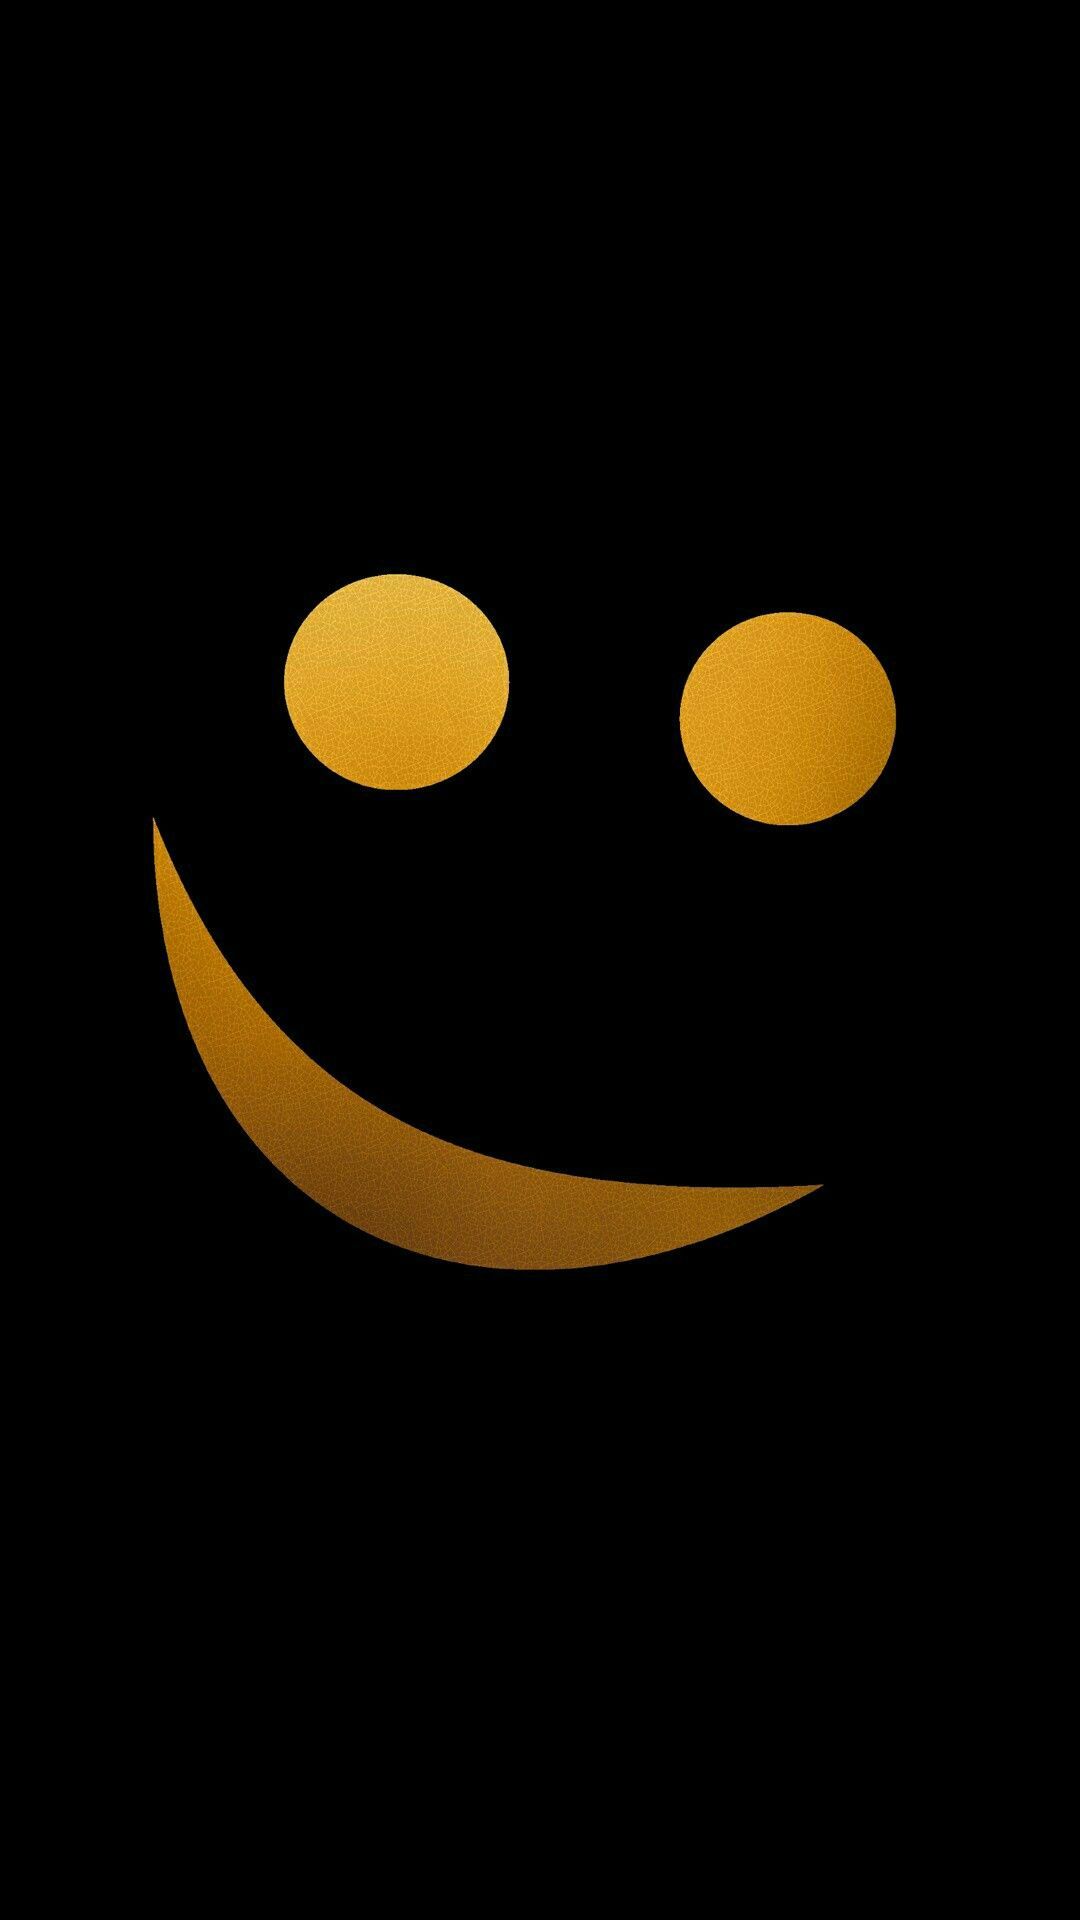 Black Emoji Wallpaper - Emoji wallpaper ·① Download free amazing High